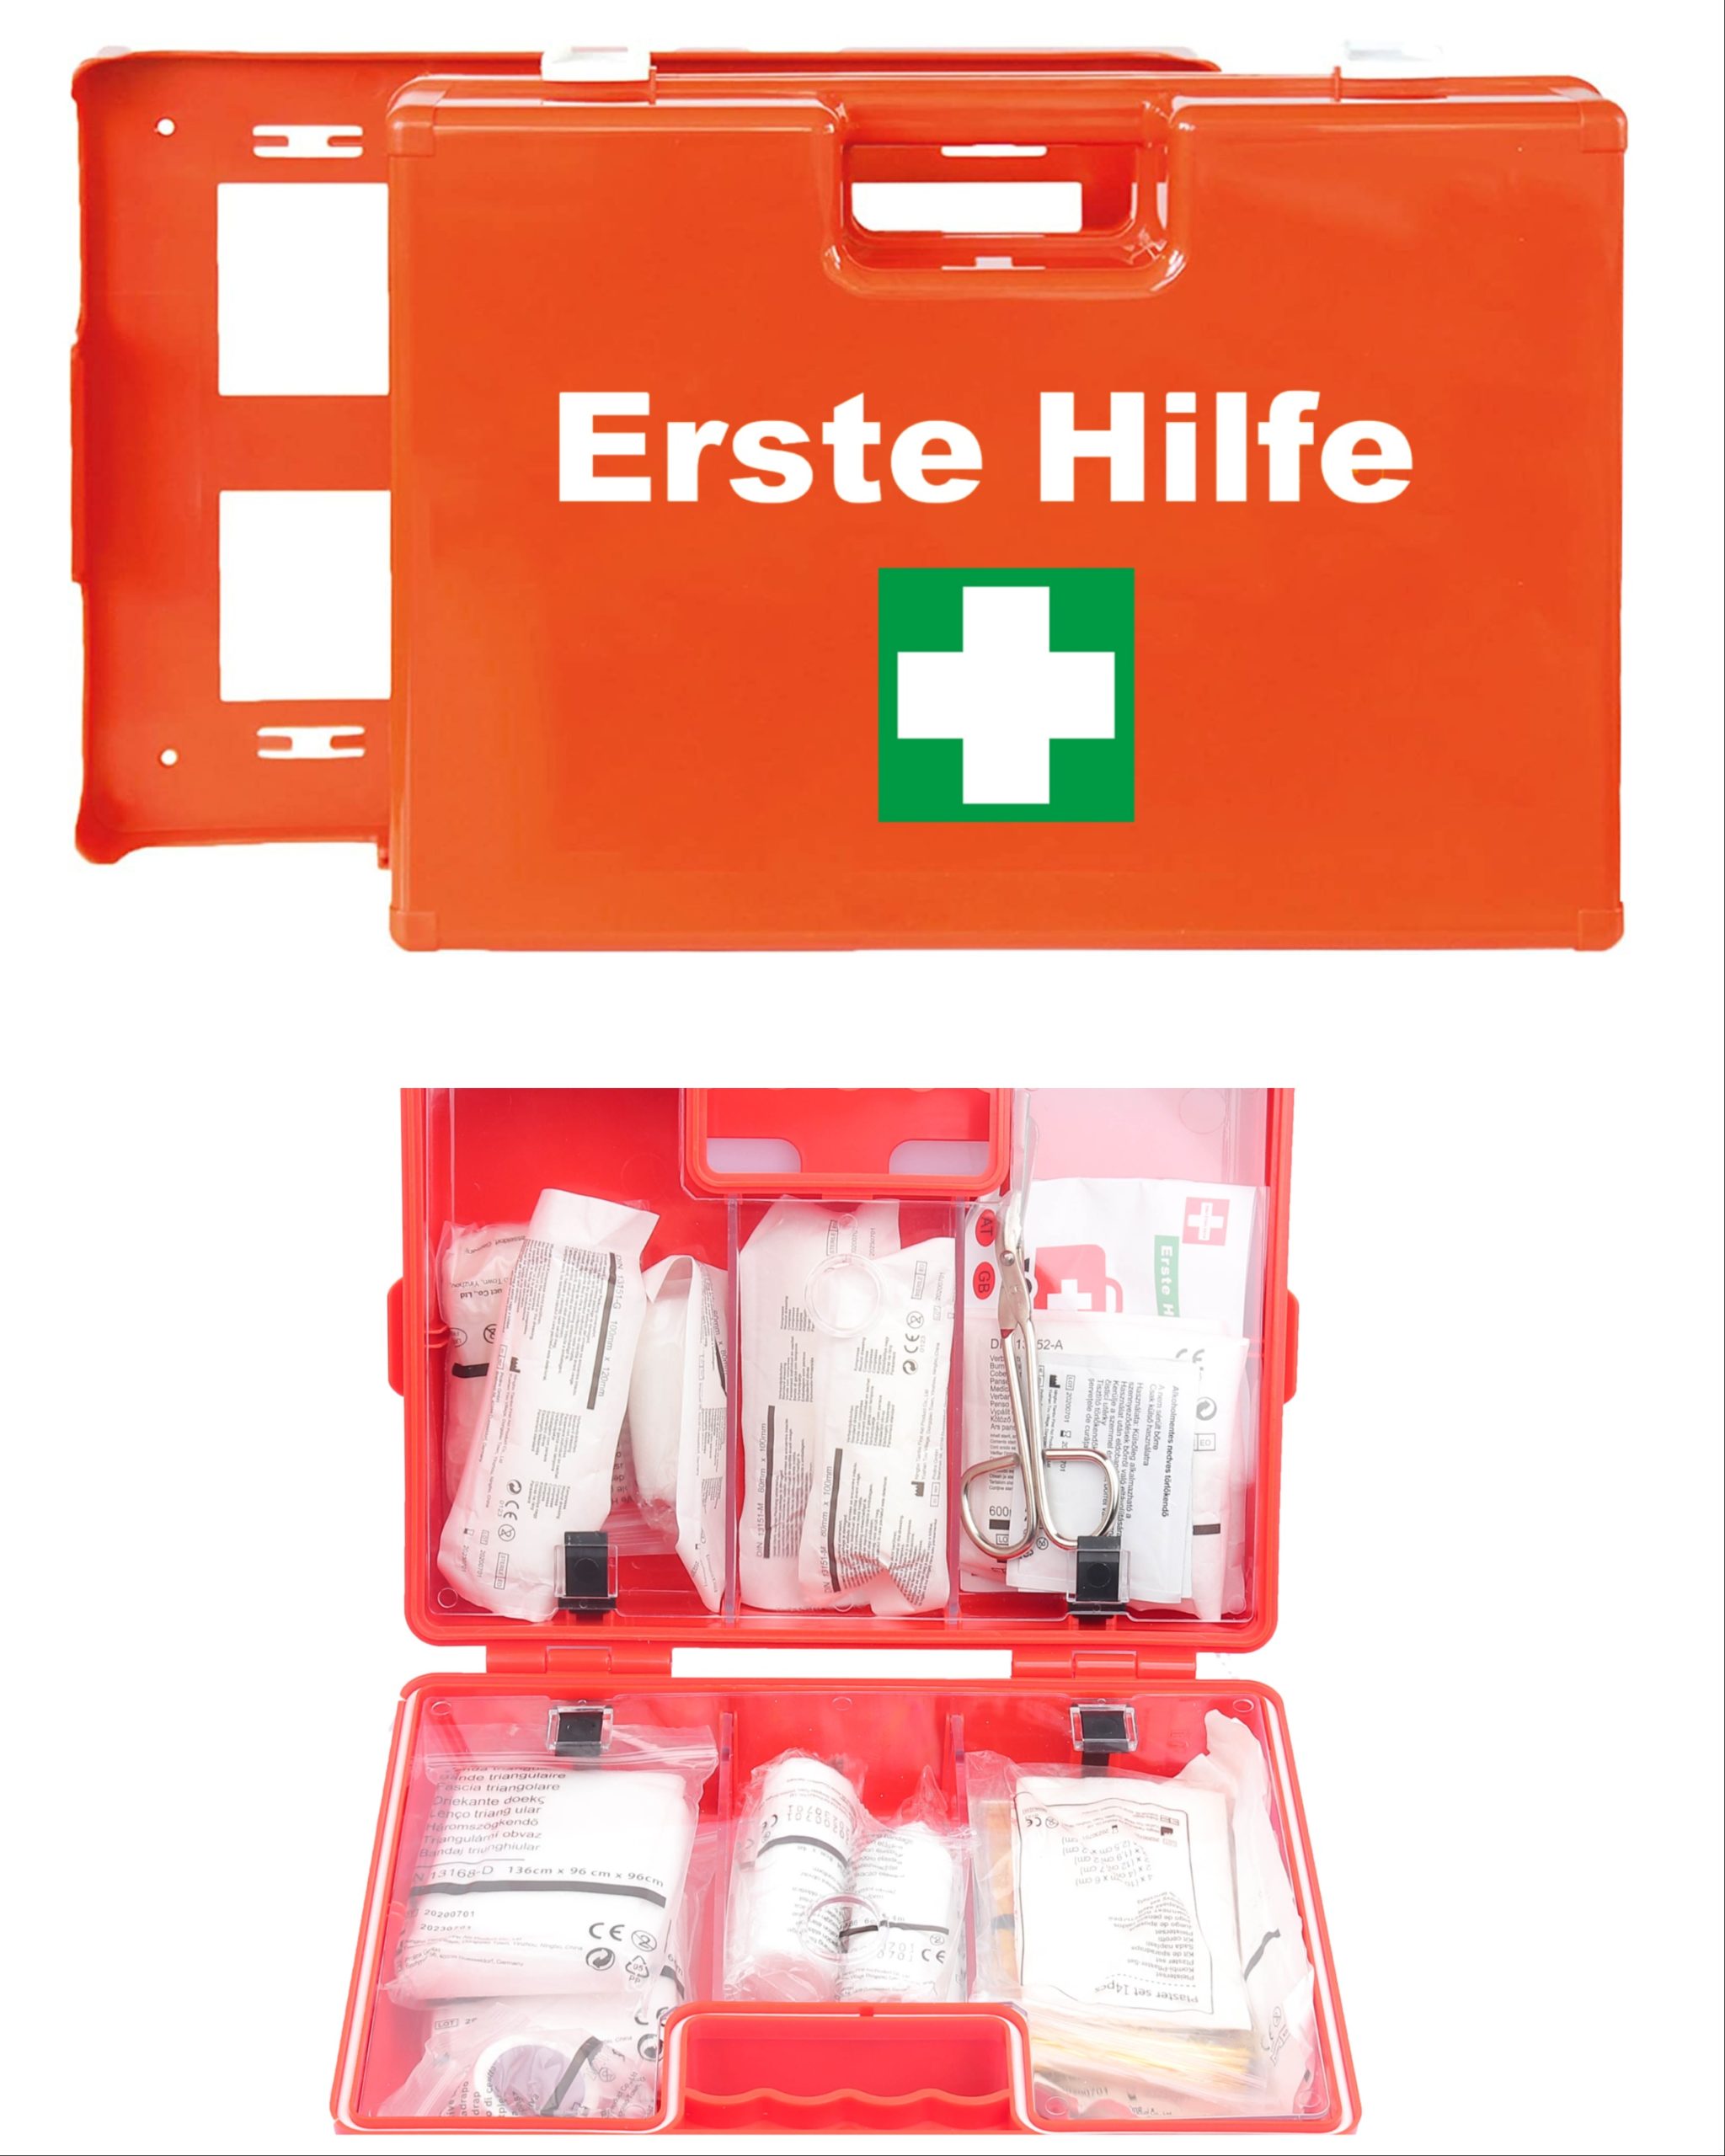 Erste-Hilfe-Koffer, Verbandskoffer, Betriebsverbandkasten nach DIN 13157  Typ C